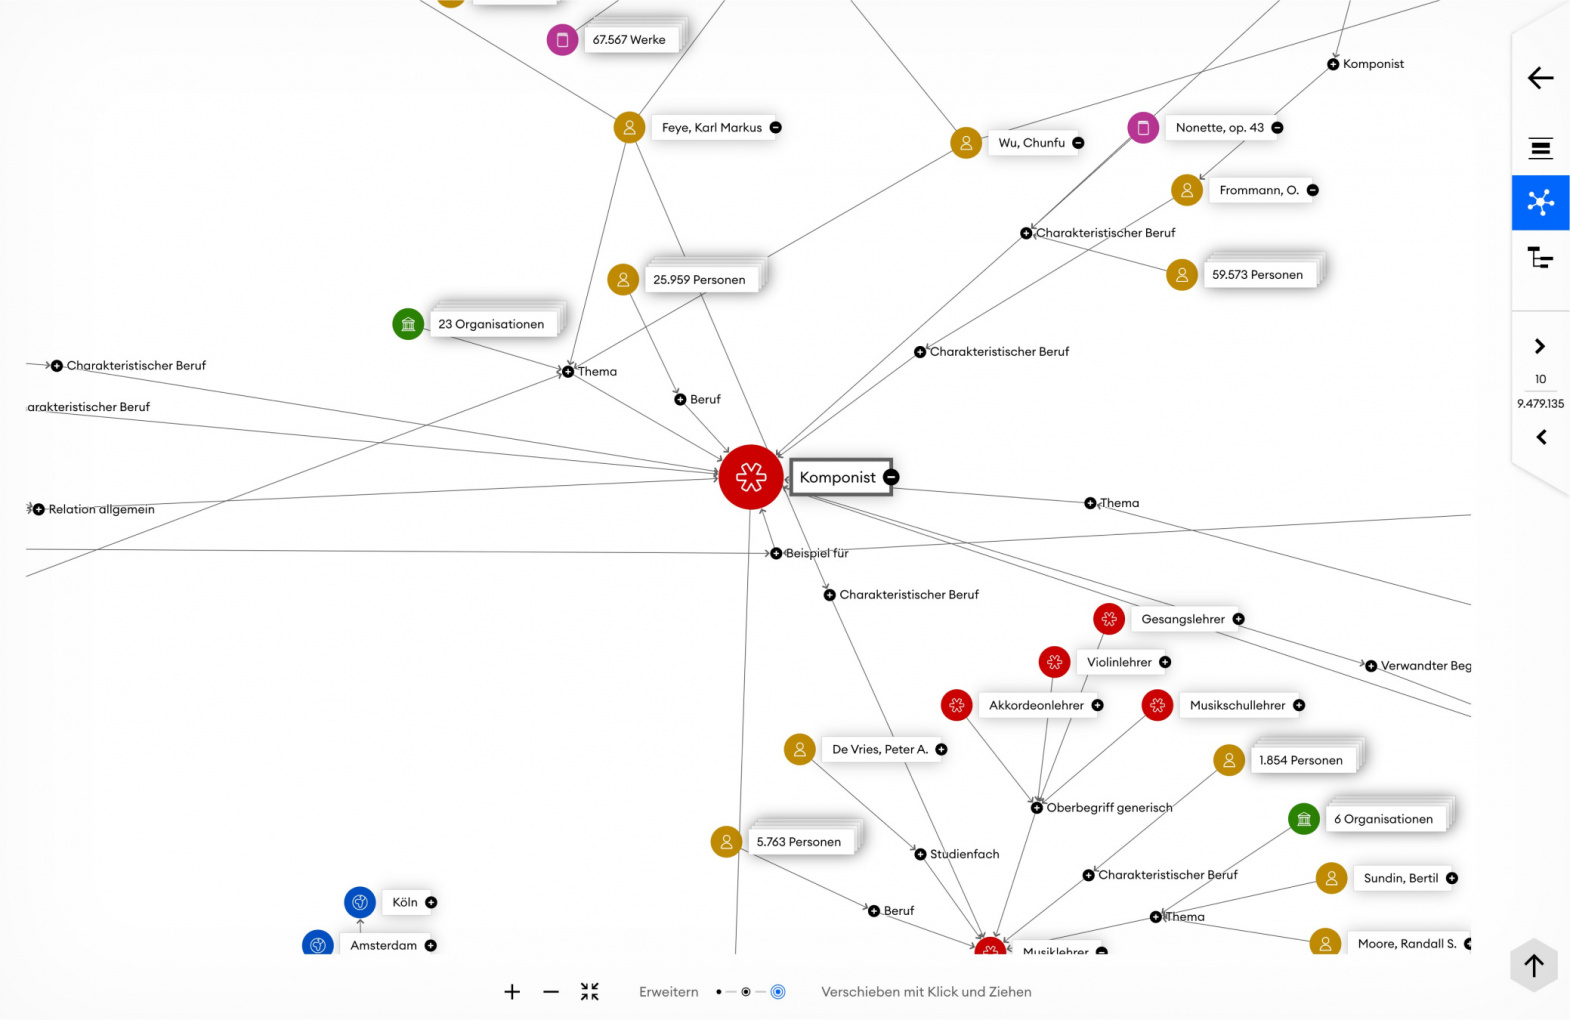 Grafisches Netzwerk der Beziehungen im GND-Explorer